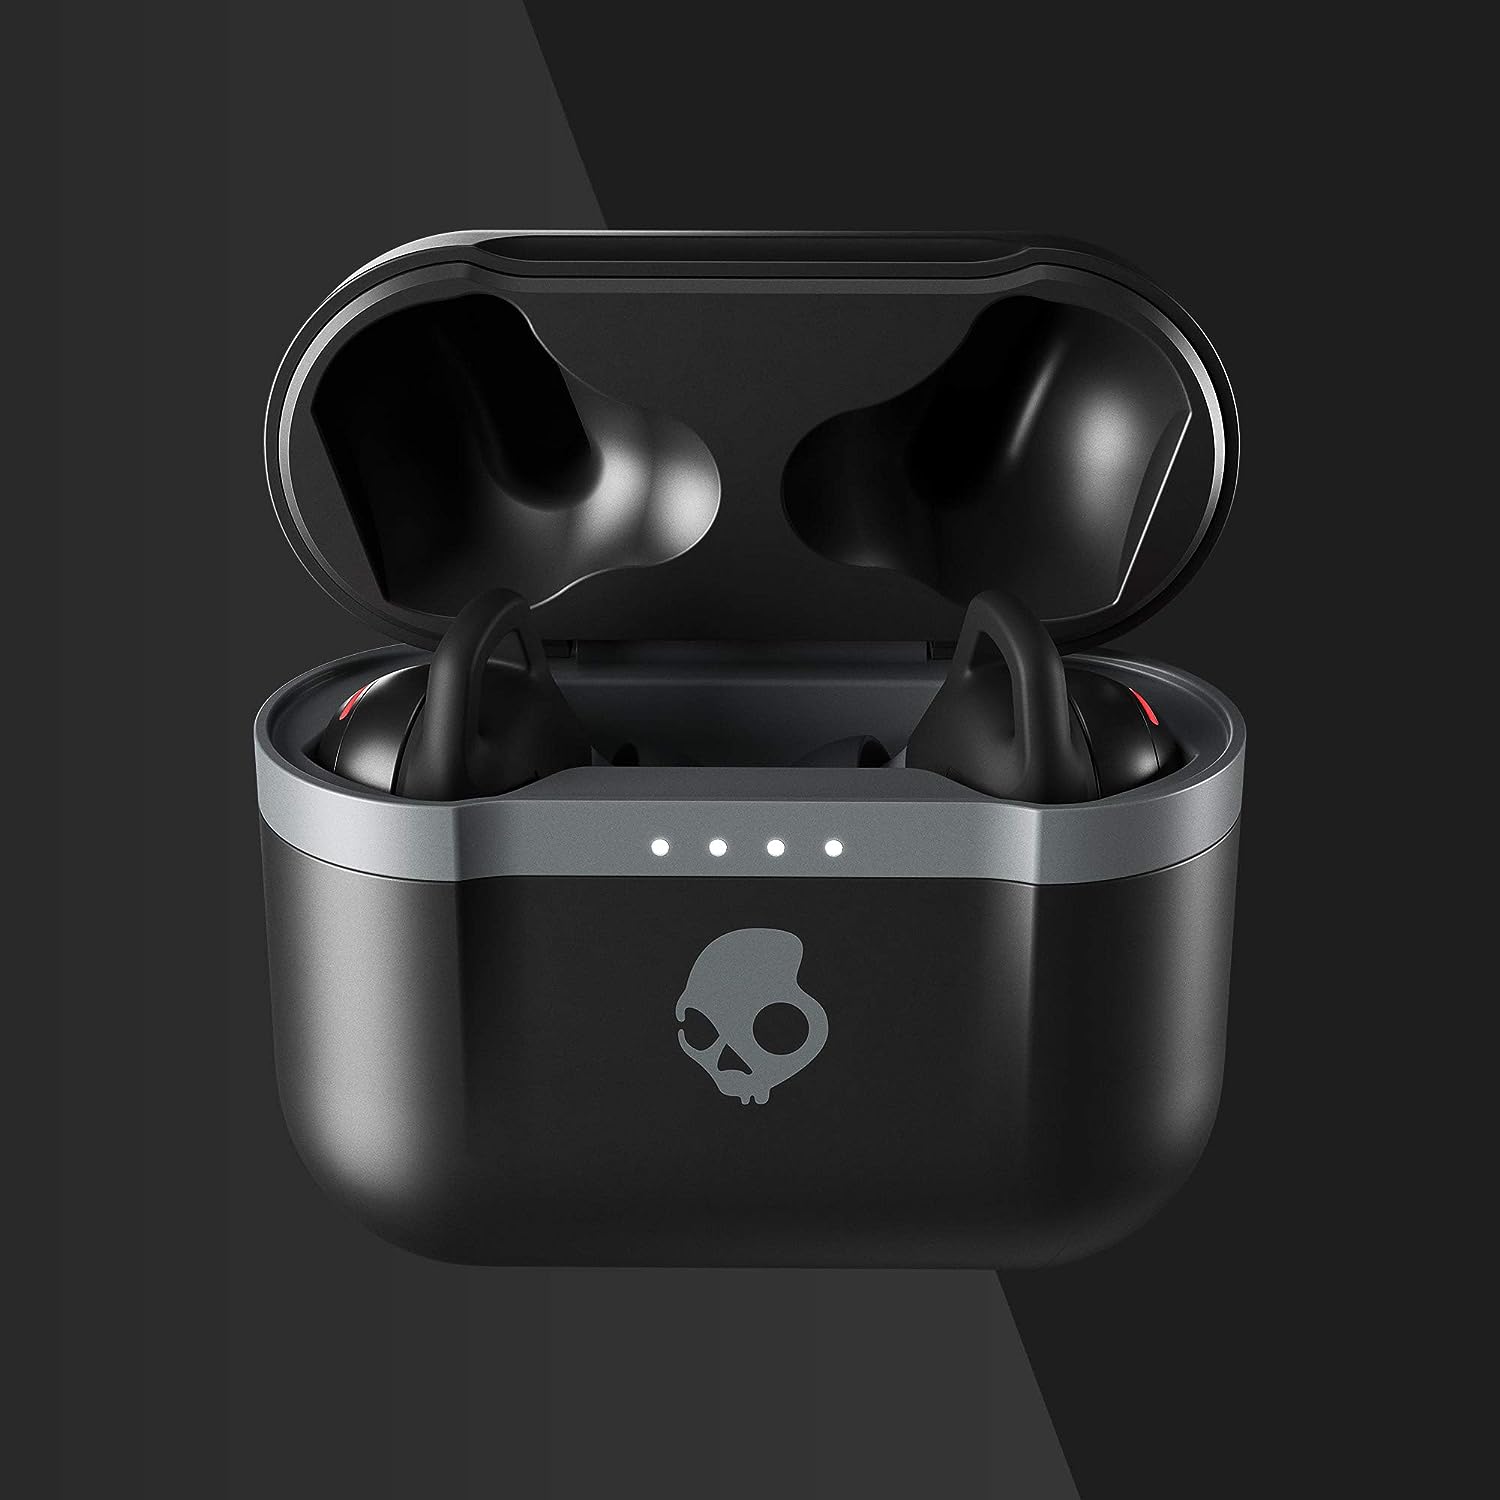 Skullcandy Indy Evo True Wireless In-Ear Headphones - Black - Refurbished Excellent